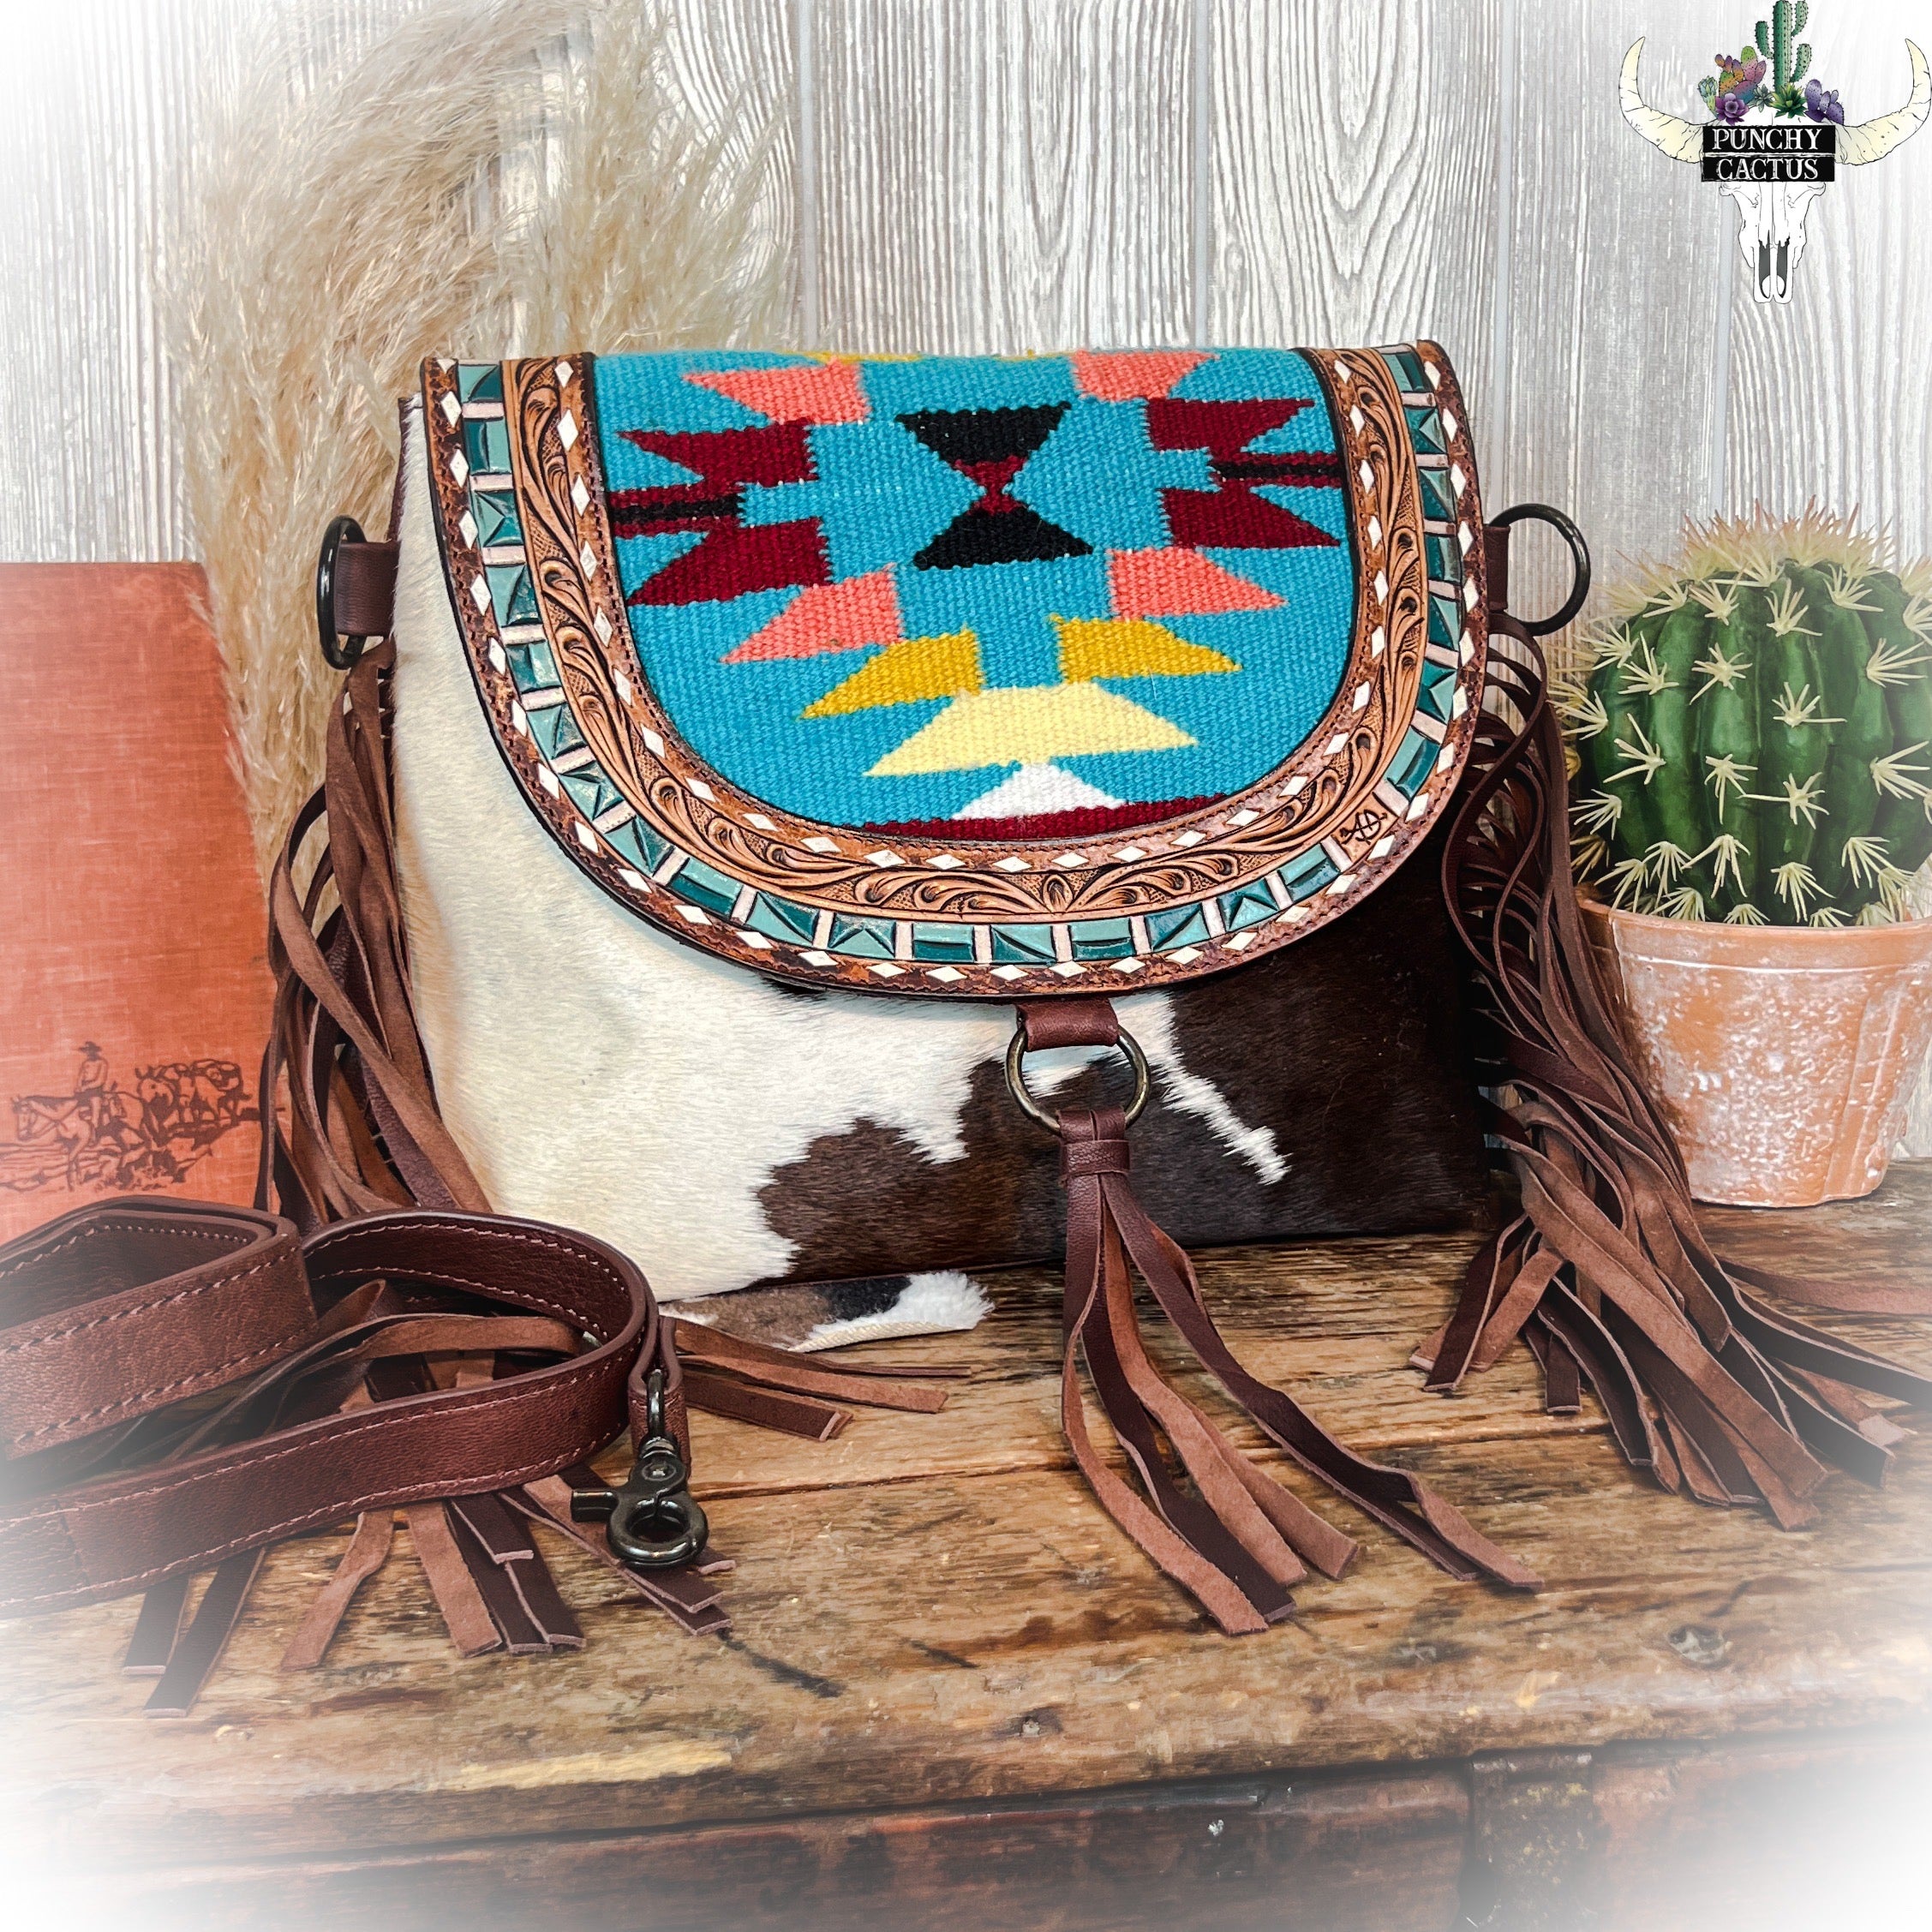 Full Grain Leather Crossbody Bag Western Cowgirl Fringe Purse Brown | eBay